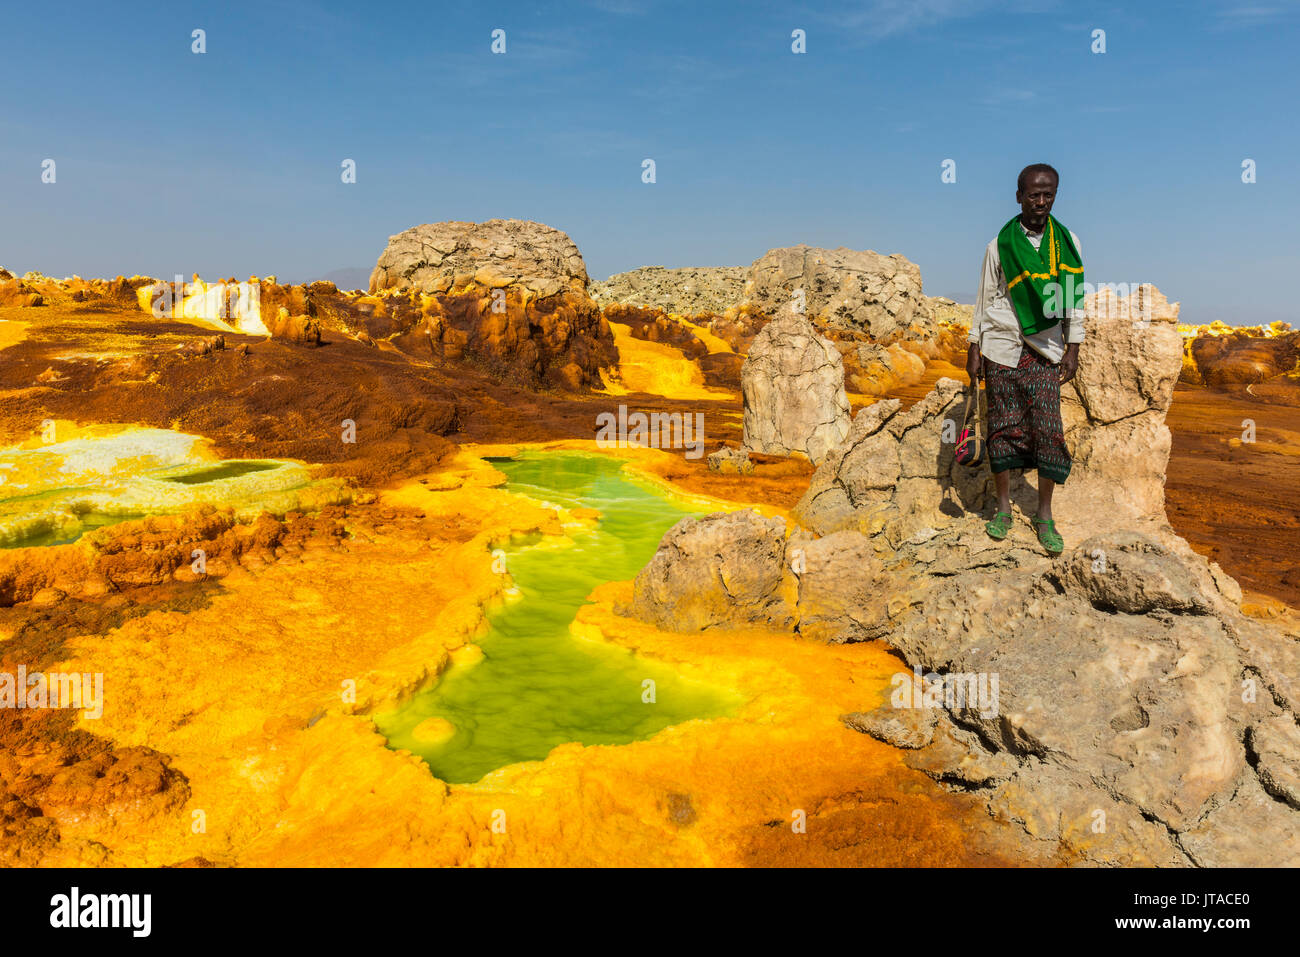 Ressorts de couleur dans l'acide, Dallol hottest place sur terre, dépression Danakil, l'Éthiopie, l'Afrique Banque D'Images